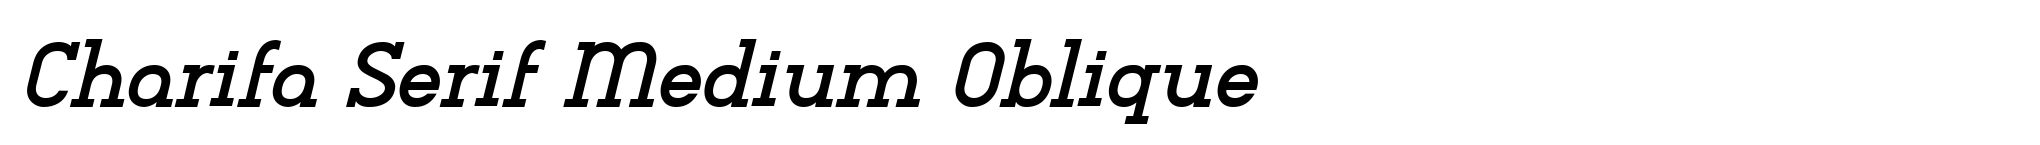 Charifa Serif Medium Oblique image